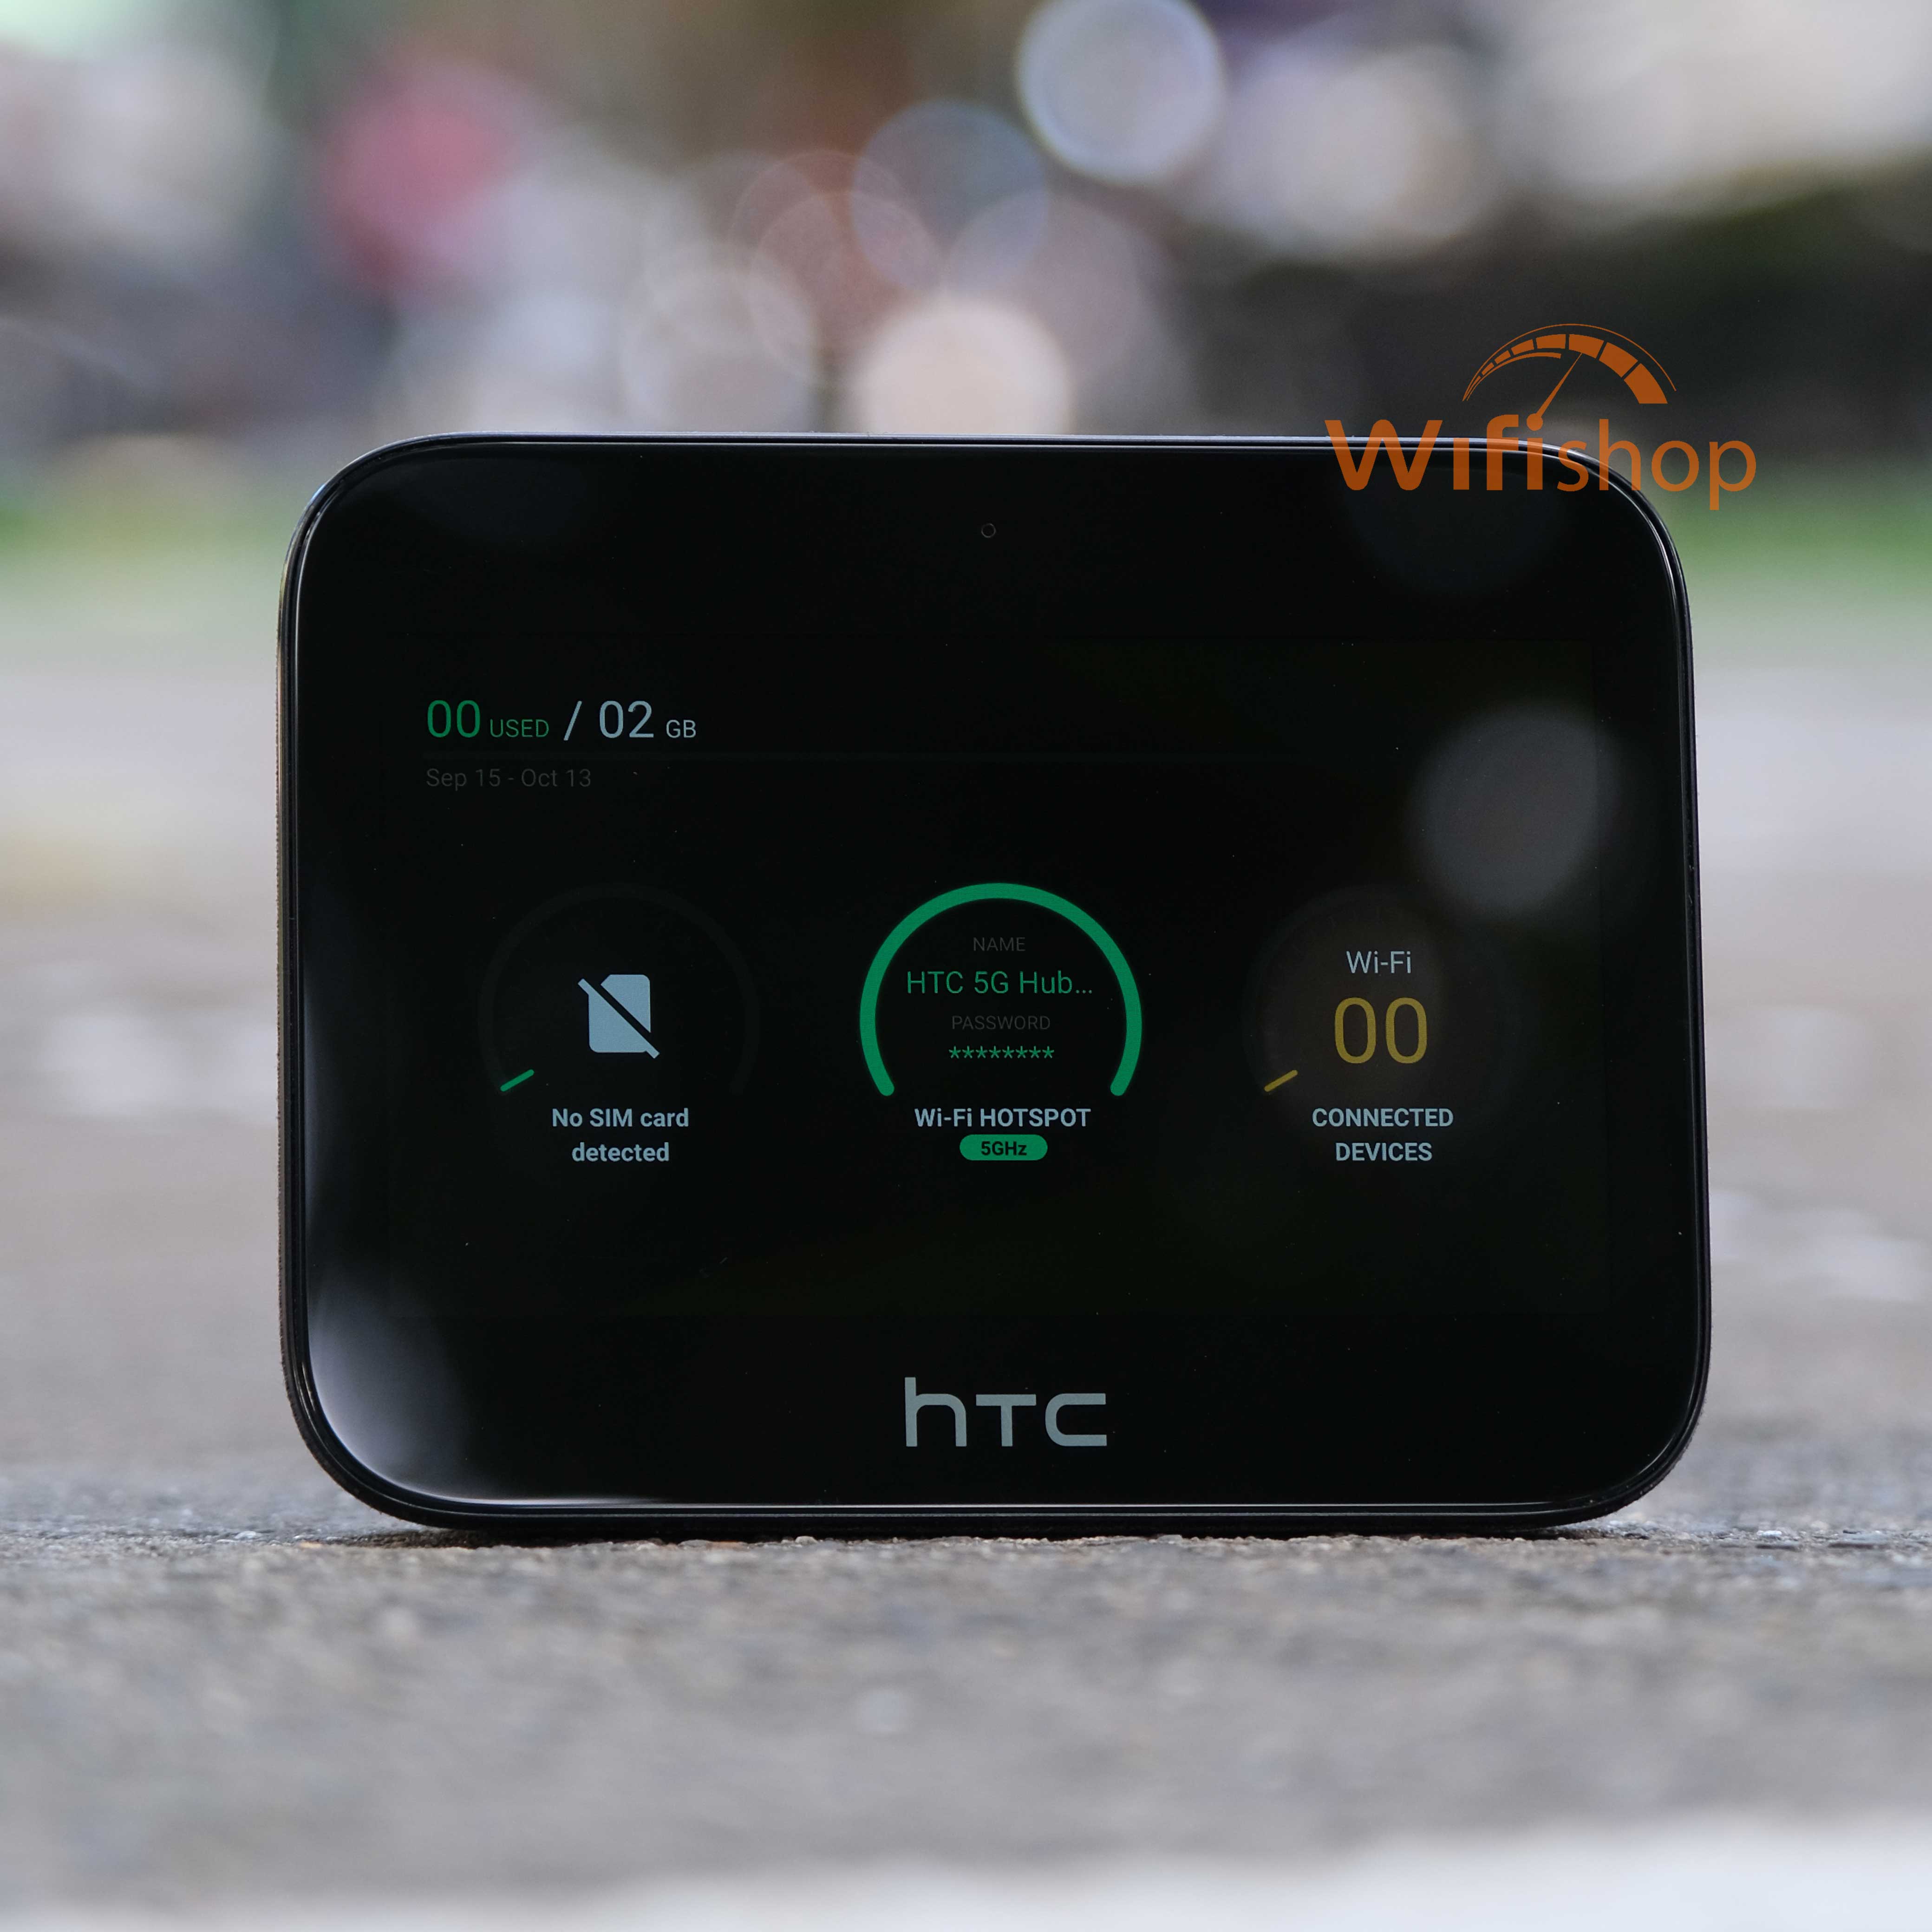 Bộ Phát Wifi HTC 5G Hub – Tốc Độ Cao, Pin 7600 mAh - WiFi 4G - CSKH 08 1626  0000 (Zalo, iMessage)